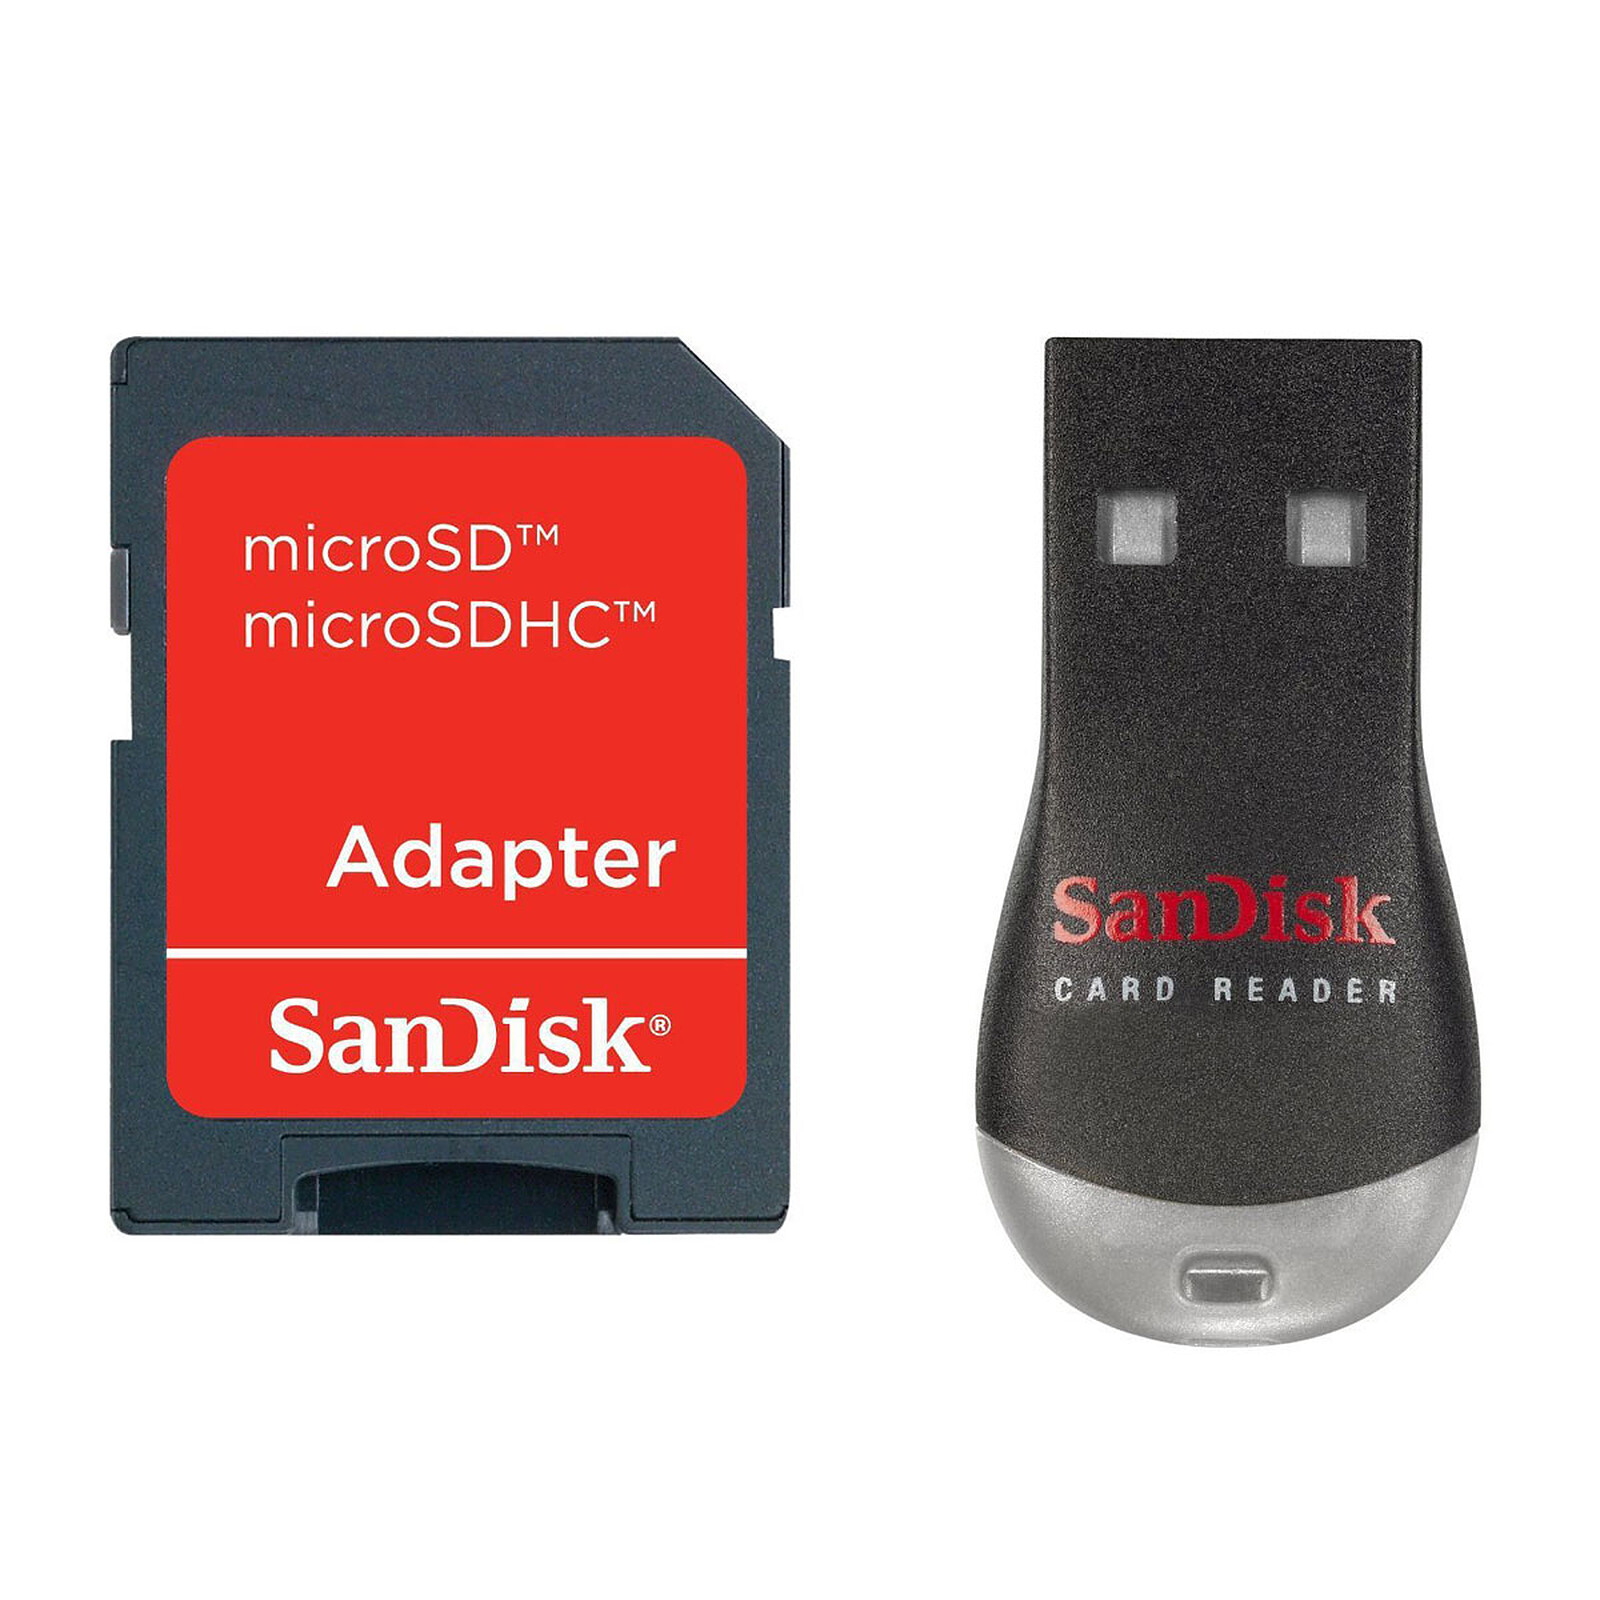 SanDisk MobileMate Duo + adaptateur - Lecteur carte mémoire - Garantie 3  ans LDLC